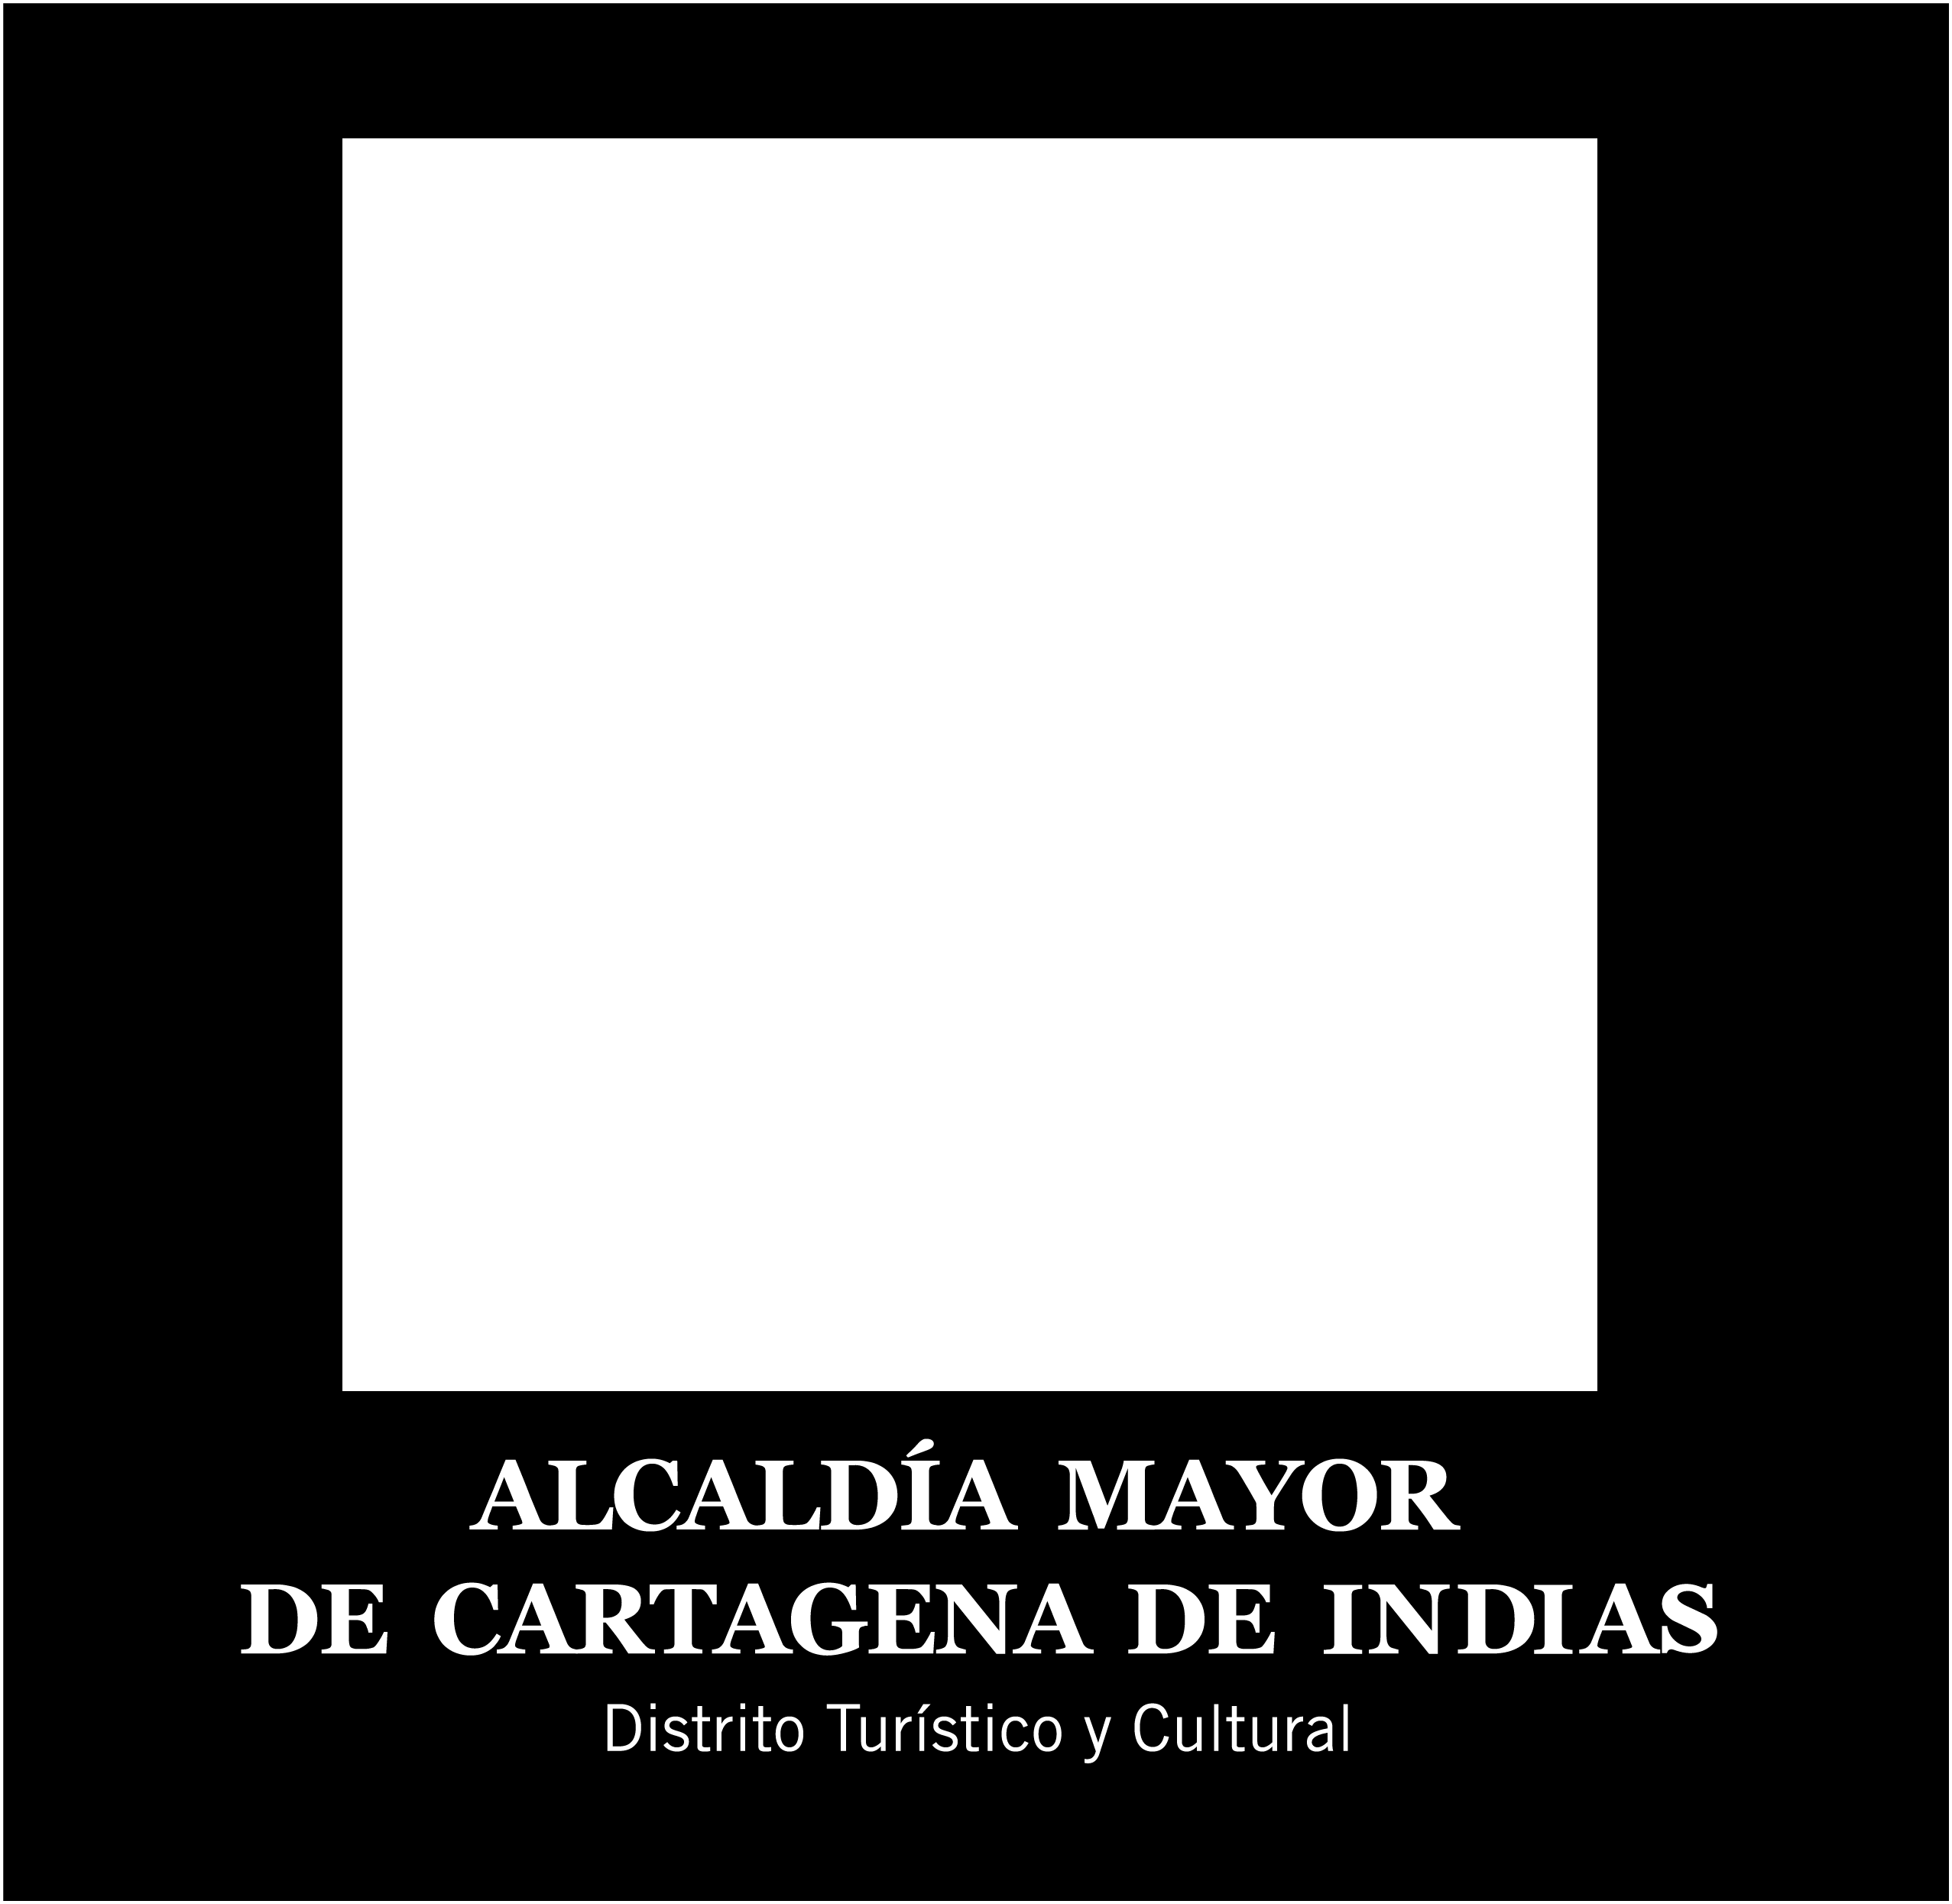 Cartagena de Indias D.T. y C., Octubre de 2015.